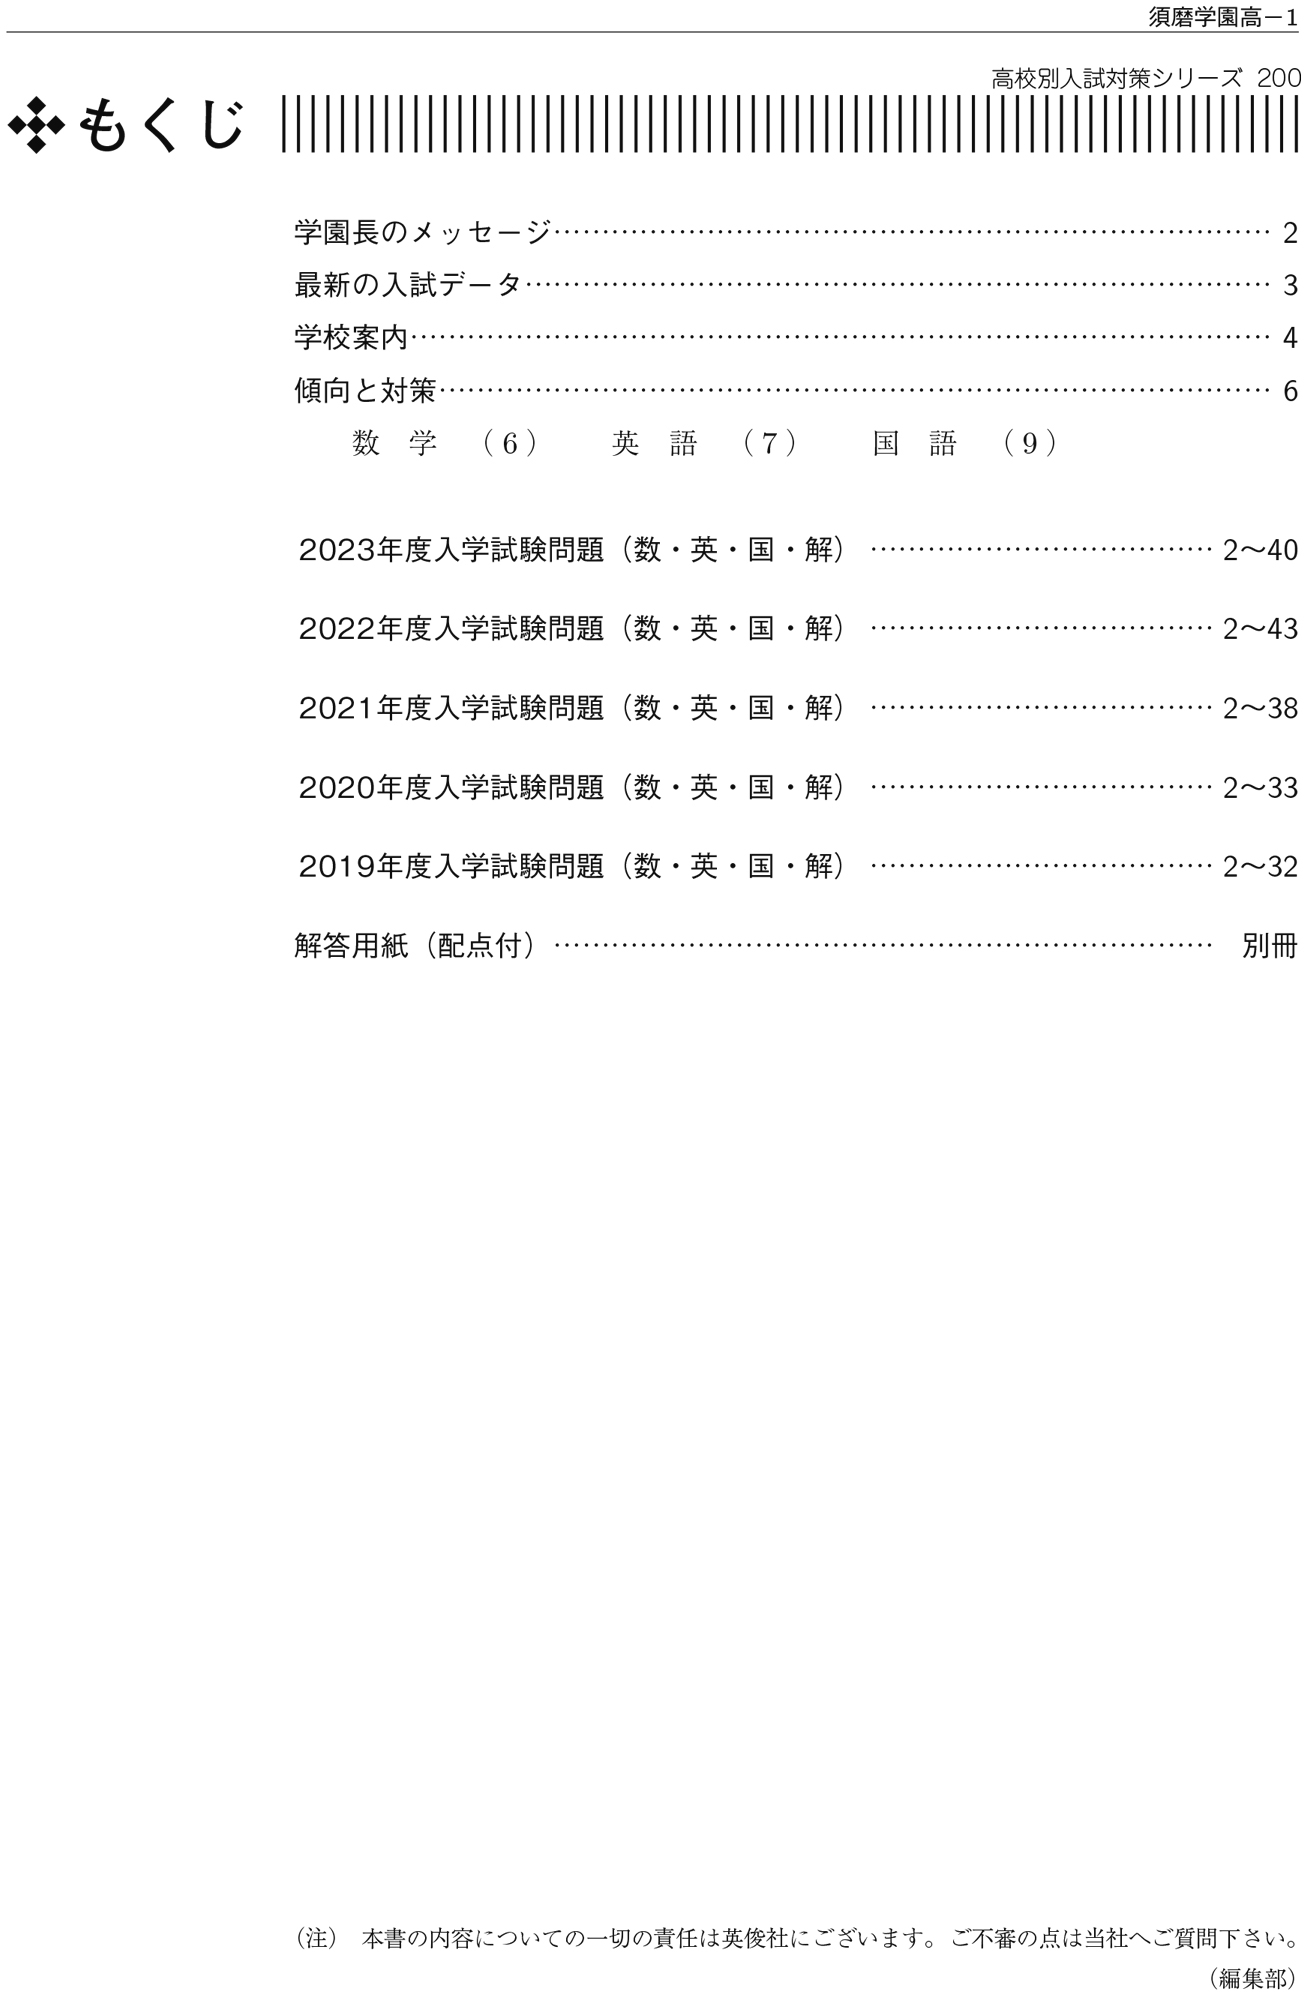 須磨学園高等学校2016年度受験用赤本 200 (高校別入試対策シリーズ)